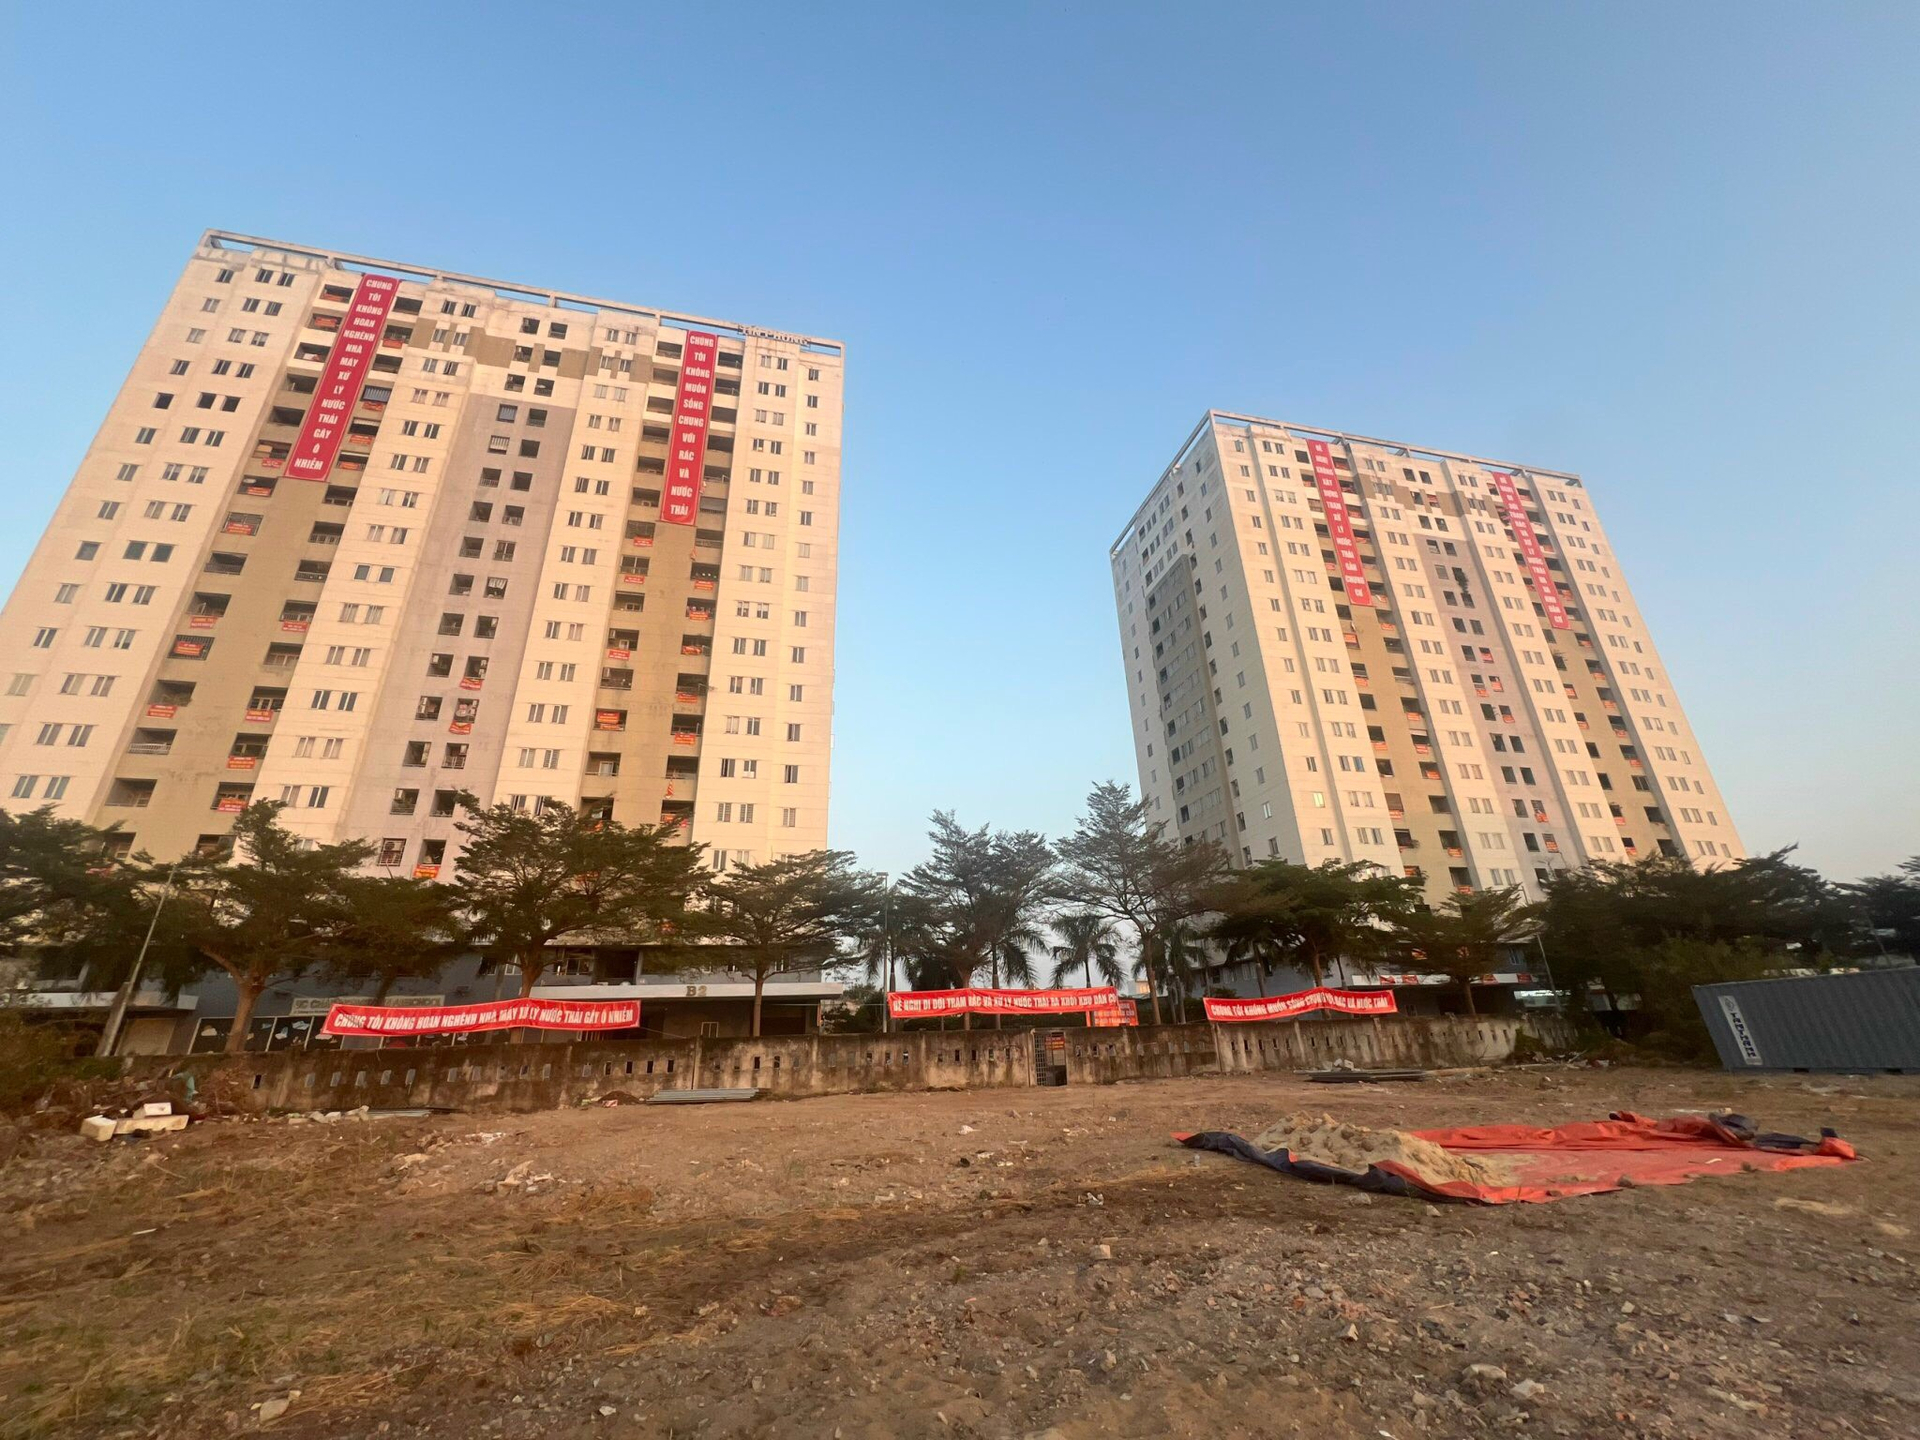 Khu vực dự kiến xây dựng “trạm xử lý nước thải” hiện hữu có quy hoạch “trạm trung chuyển rác thải - ép rác” rất gần chung cư Tín Phong